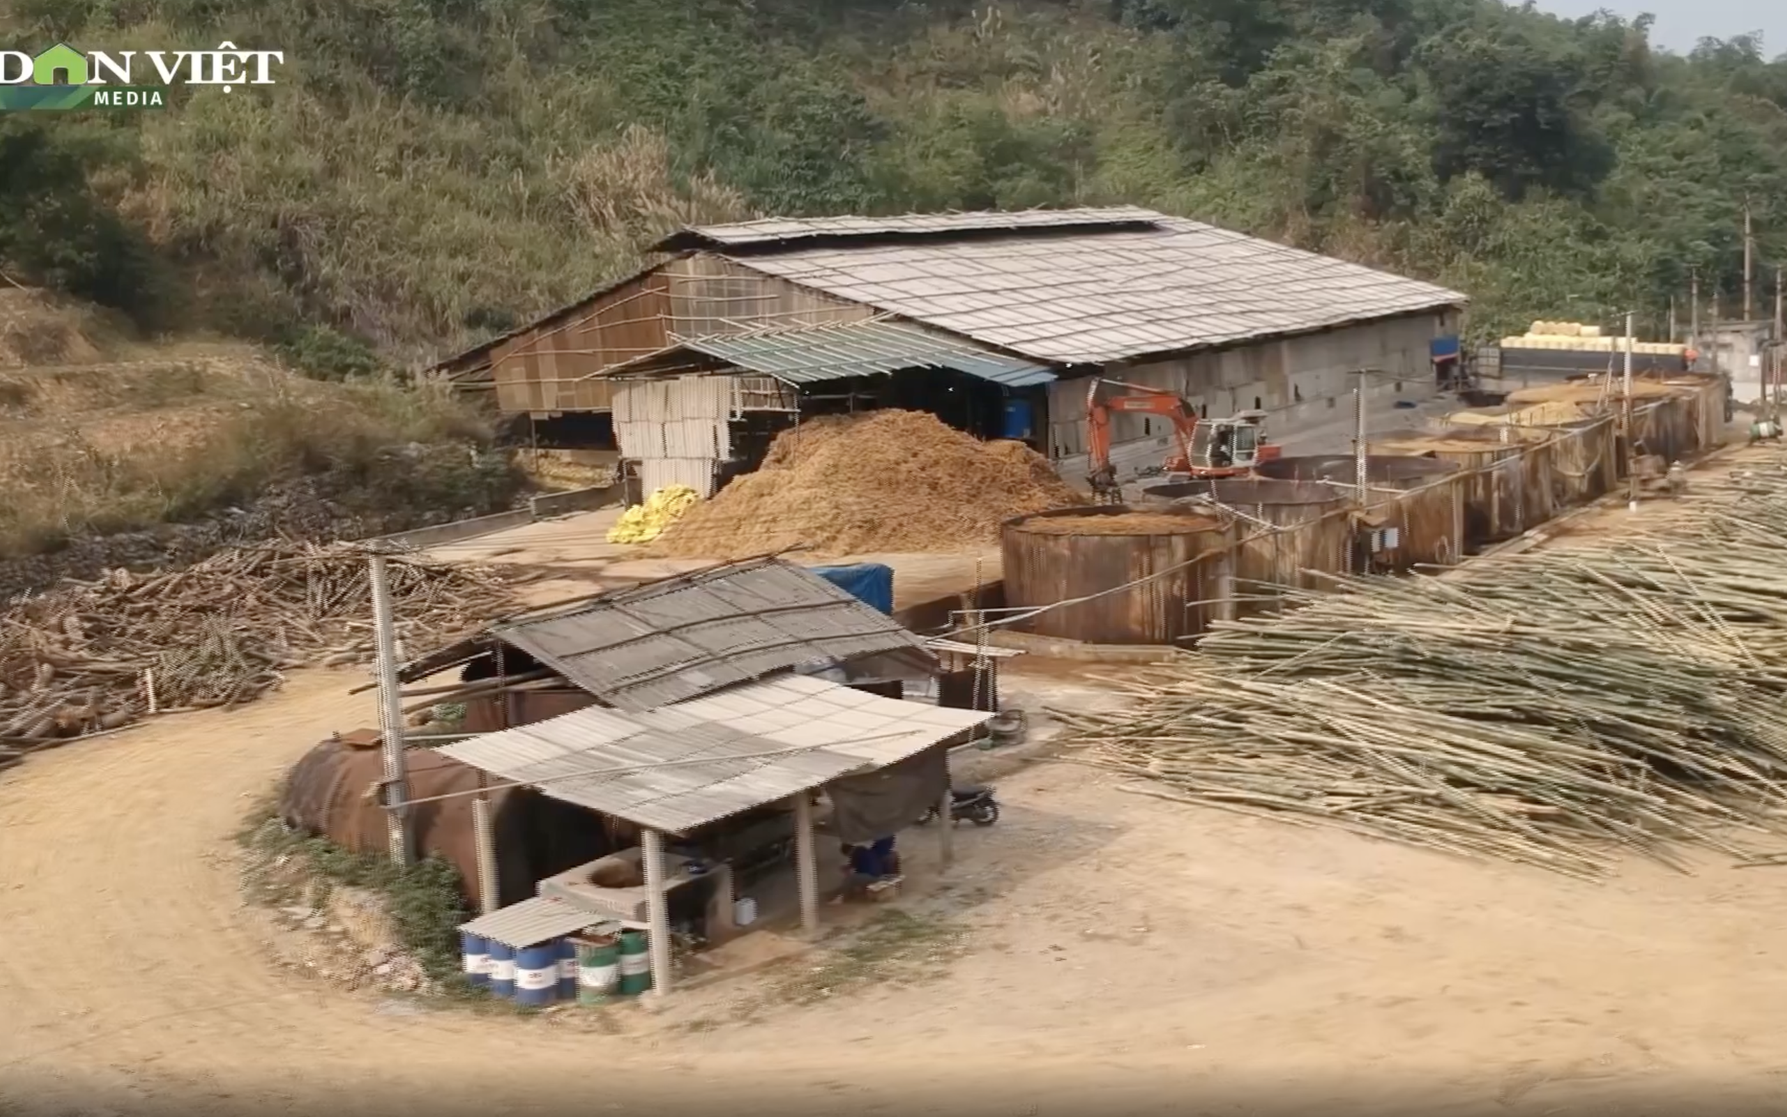 UBND tỉnh Hoà Bình: Loay hoay trong việc xử lý nhà máy giấy Thuận Phát